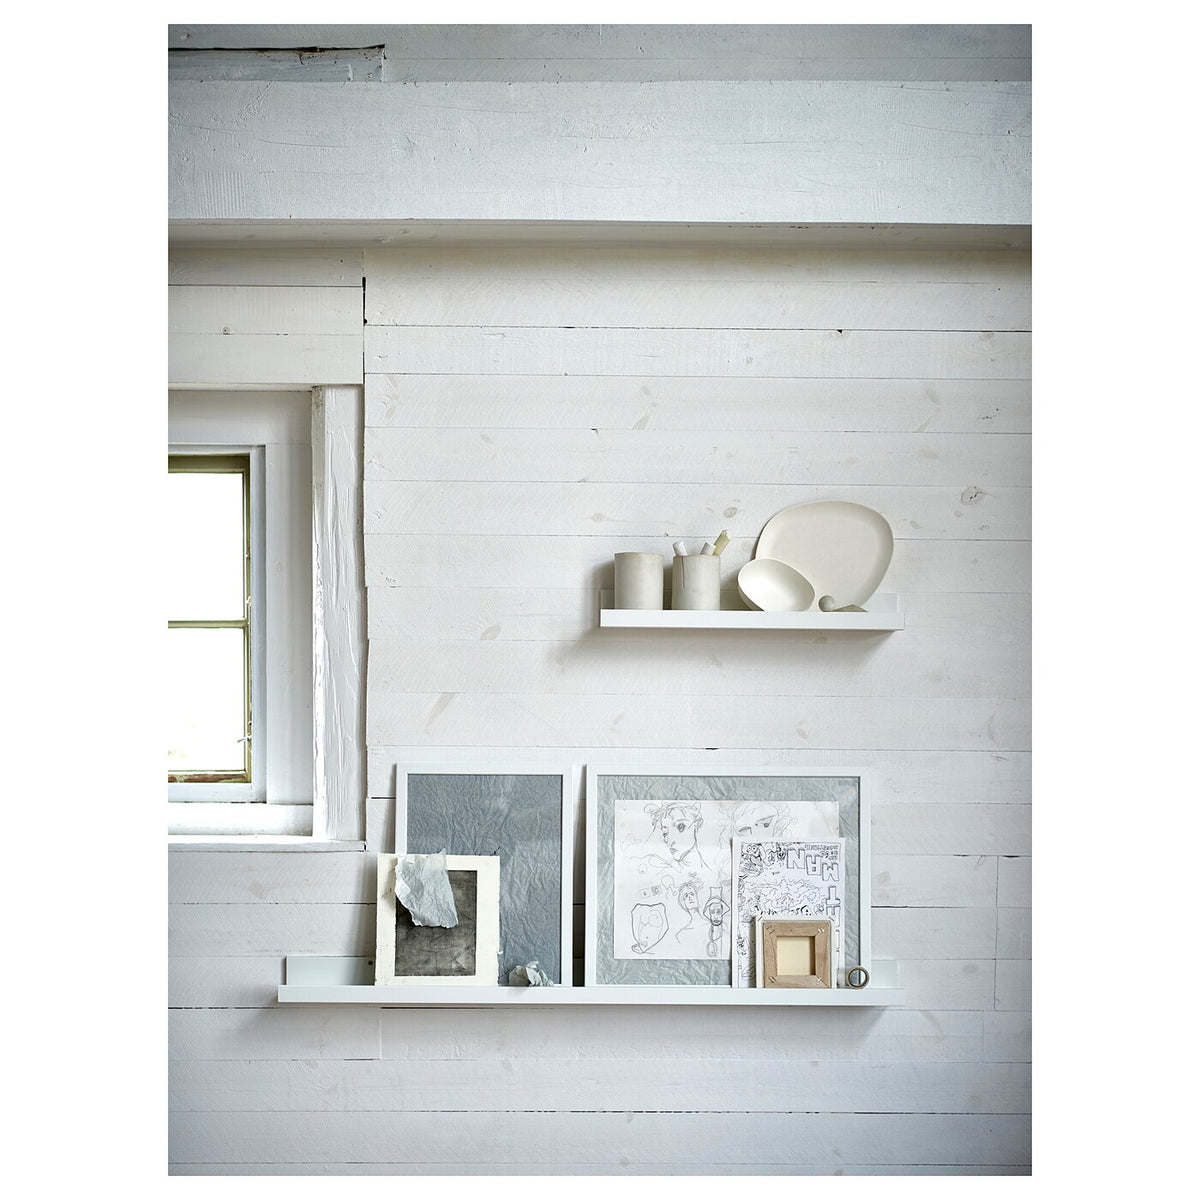 IKEA MOSSLANDA picture ledge, white, 115 cm